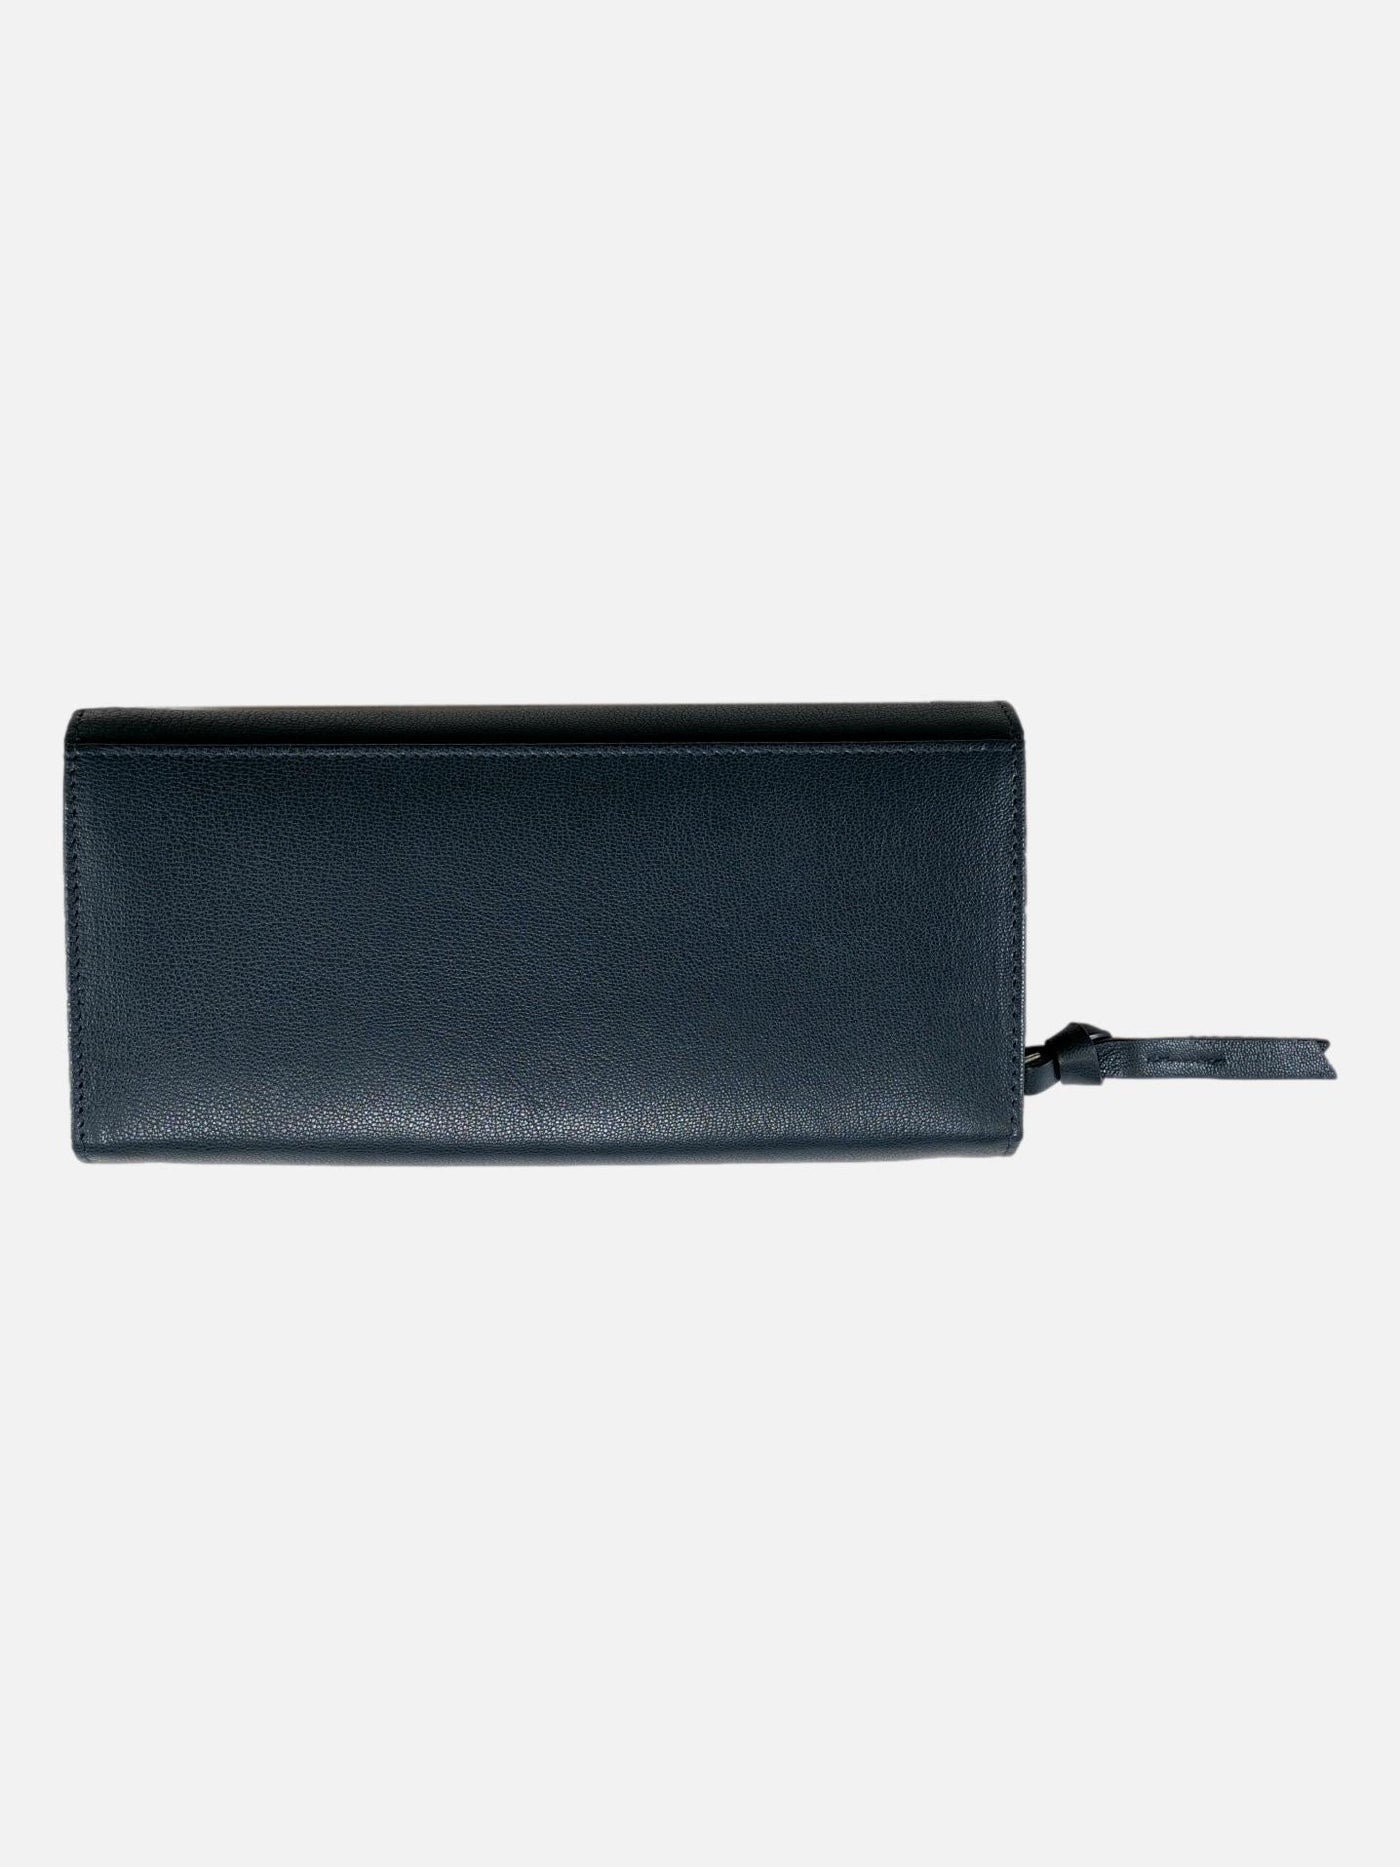 LW-0019 Wallet - Leather - Accesories - Dark Navy